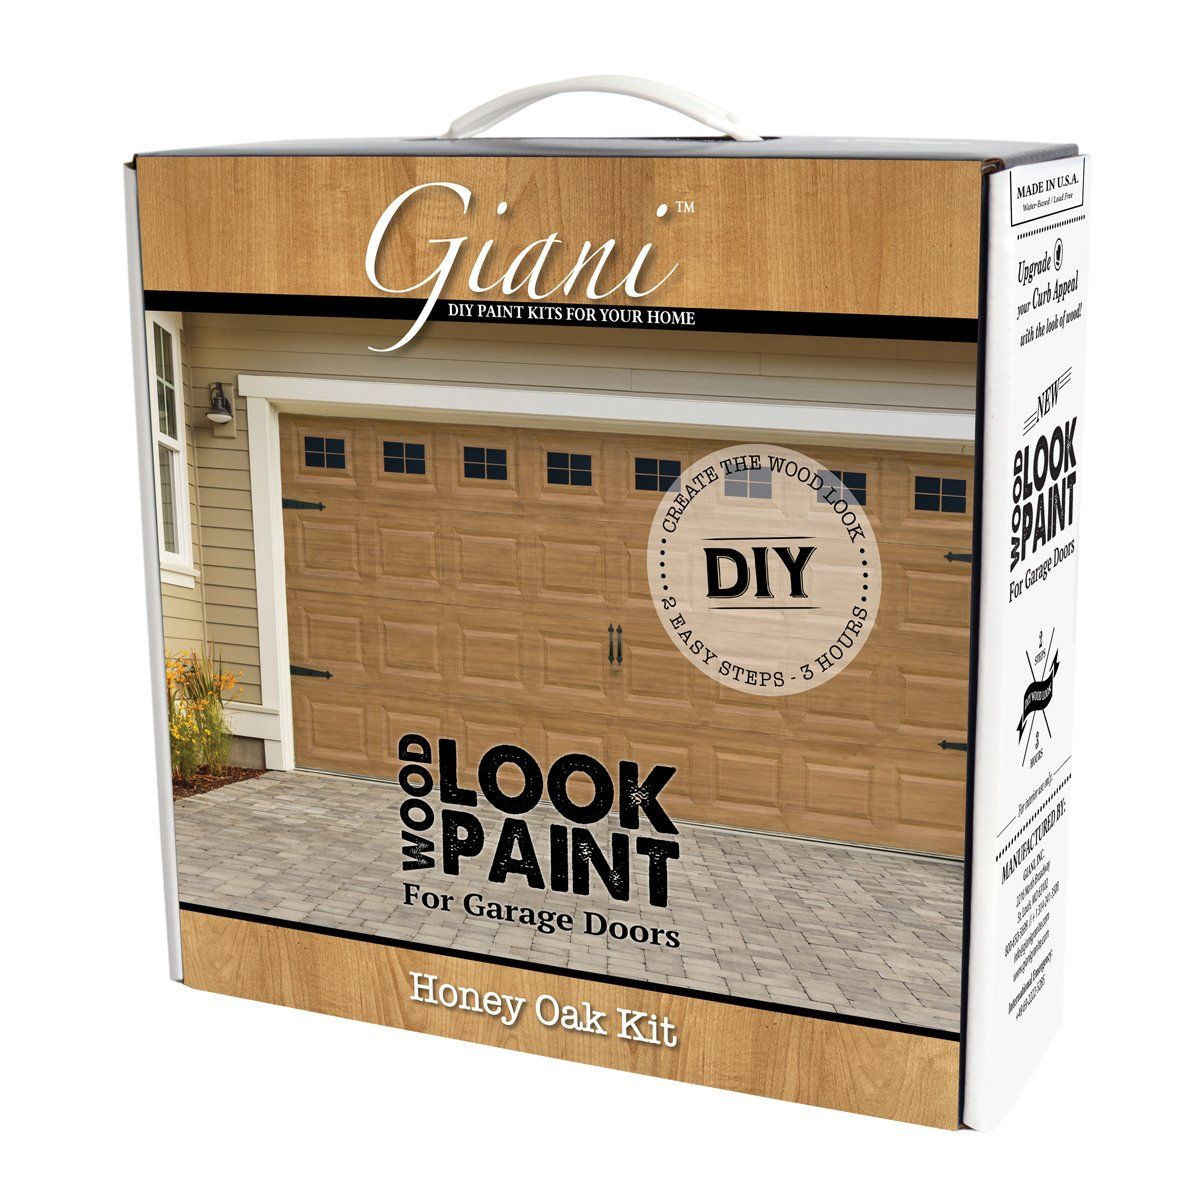 DIY Wood Garage Door Kits
 Giani Honey Oak Wood Look Kit for Garage Doors